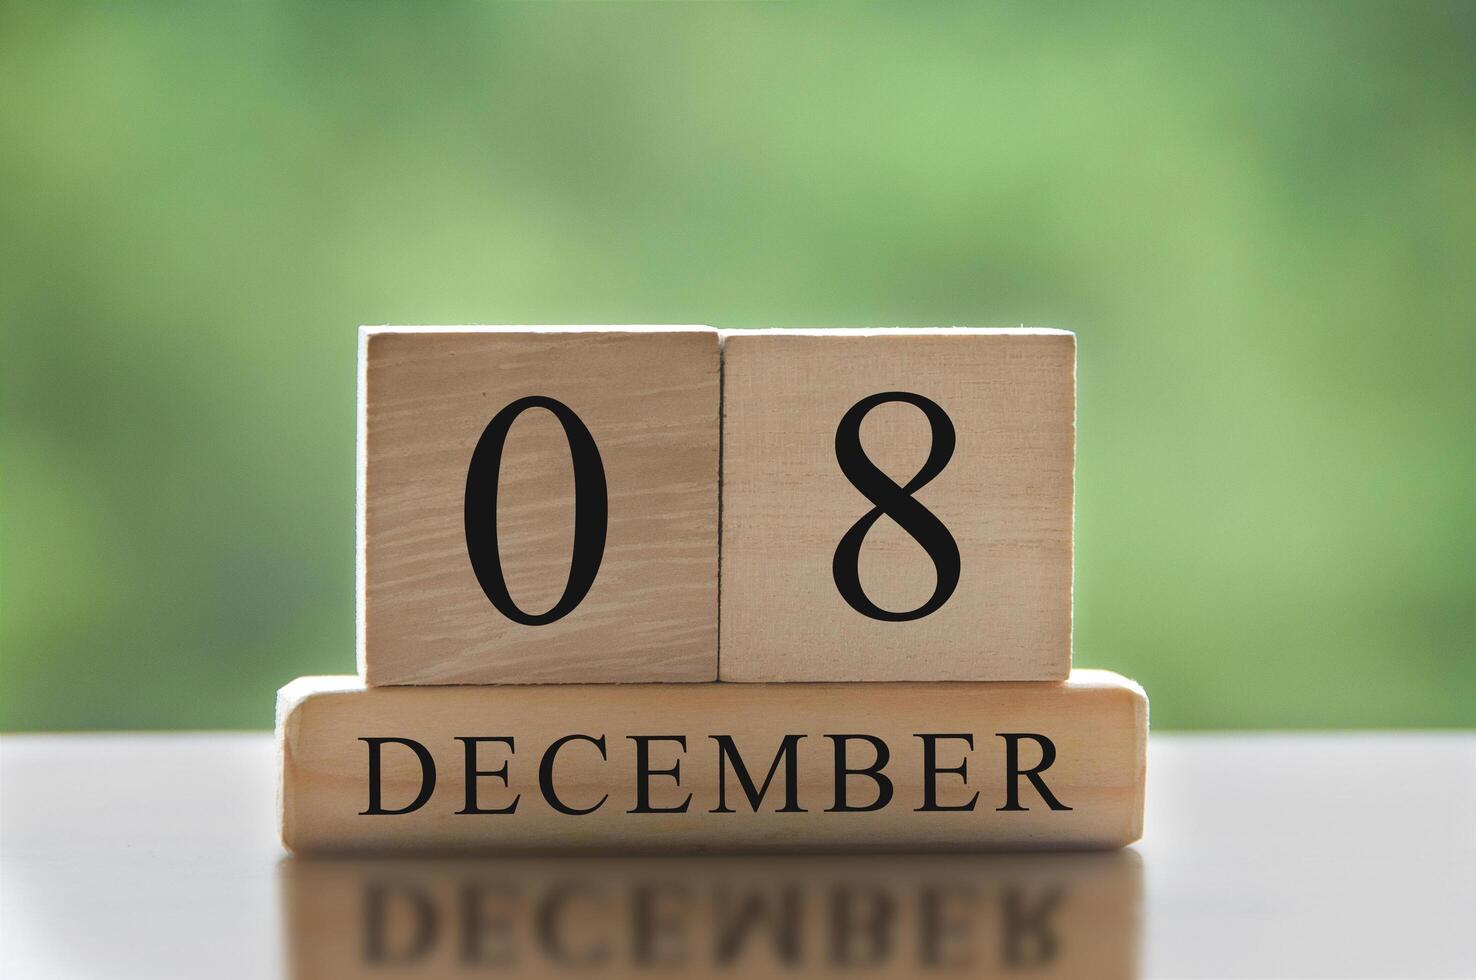 8 december tekst op houten blokken met vage aardachtergrond. kalender concept foto